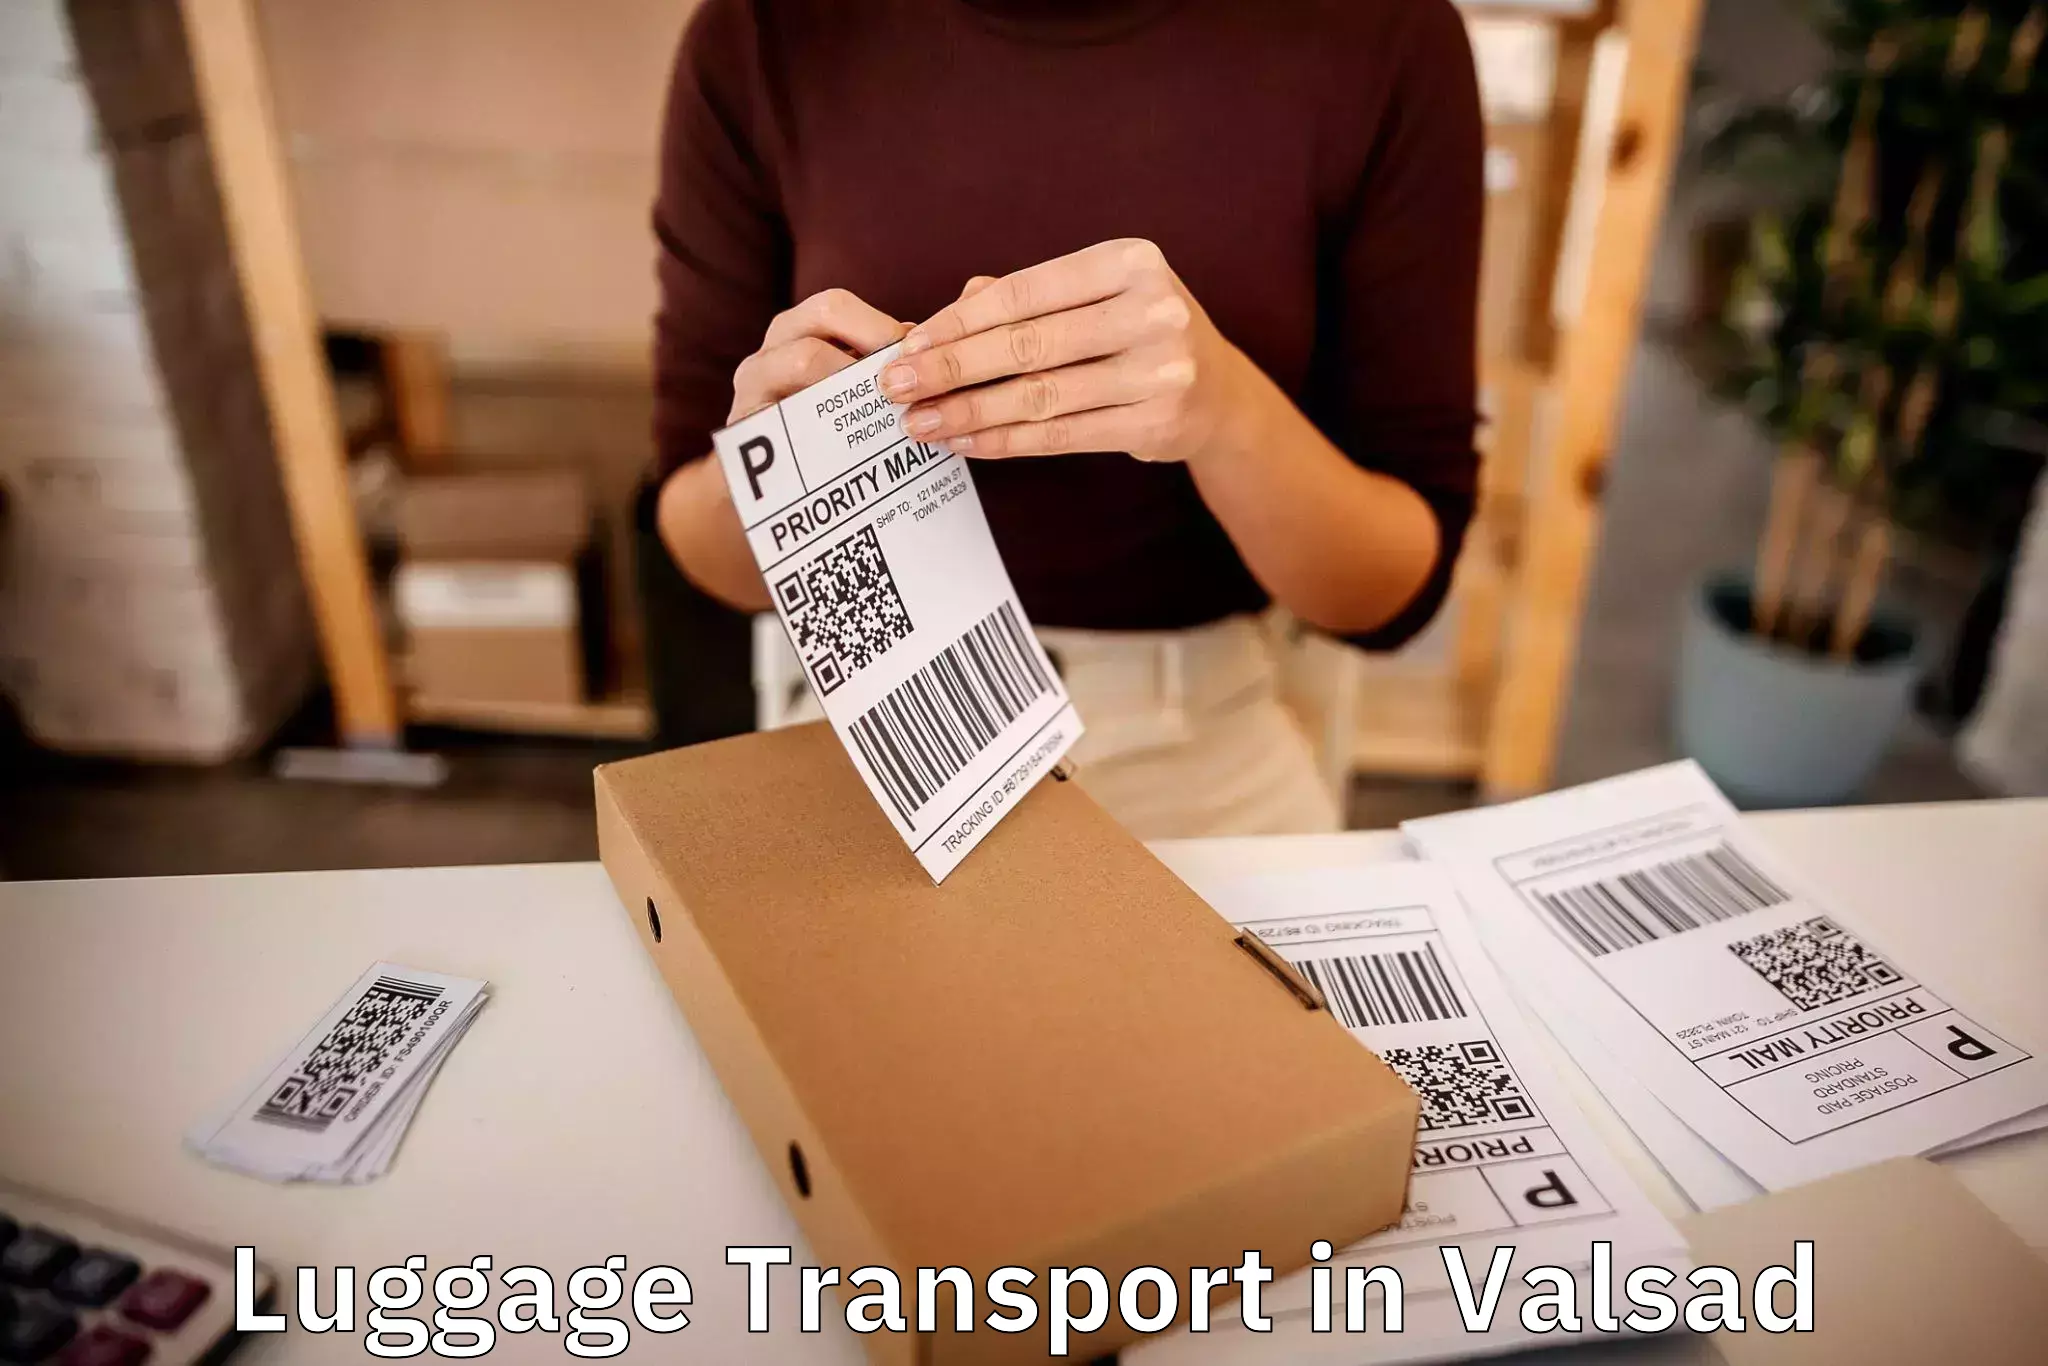 Baggage transport management in Valsad